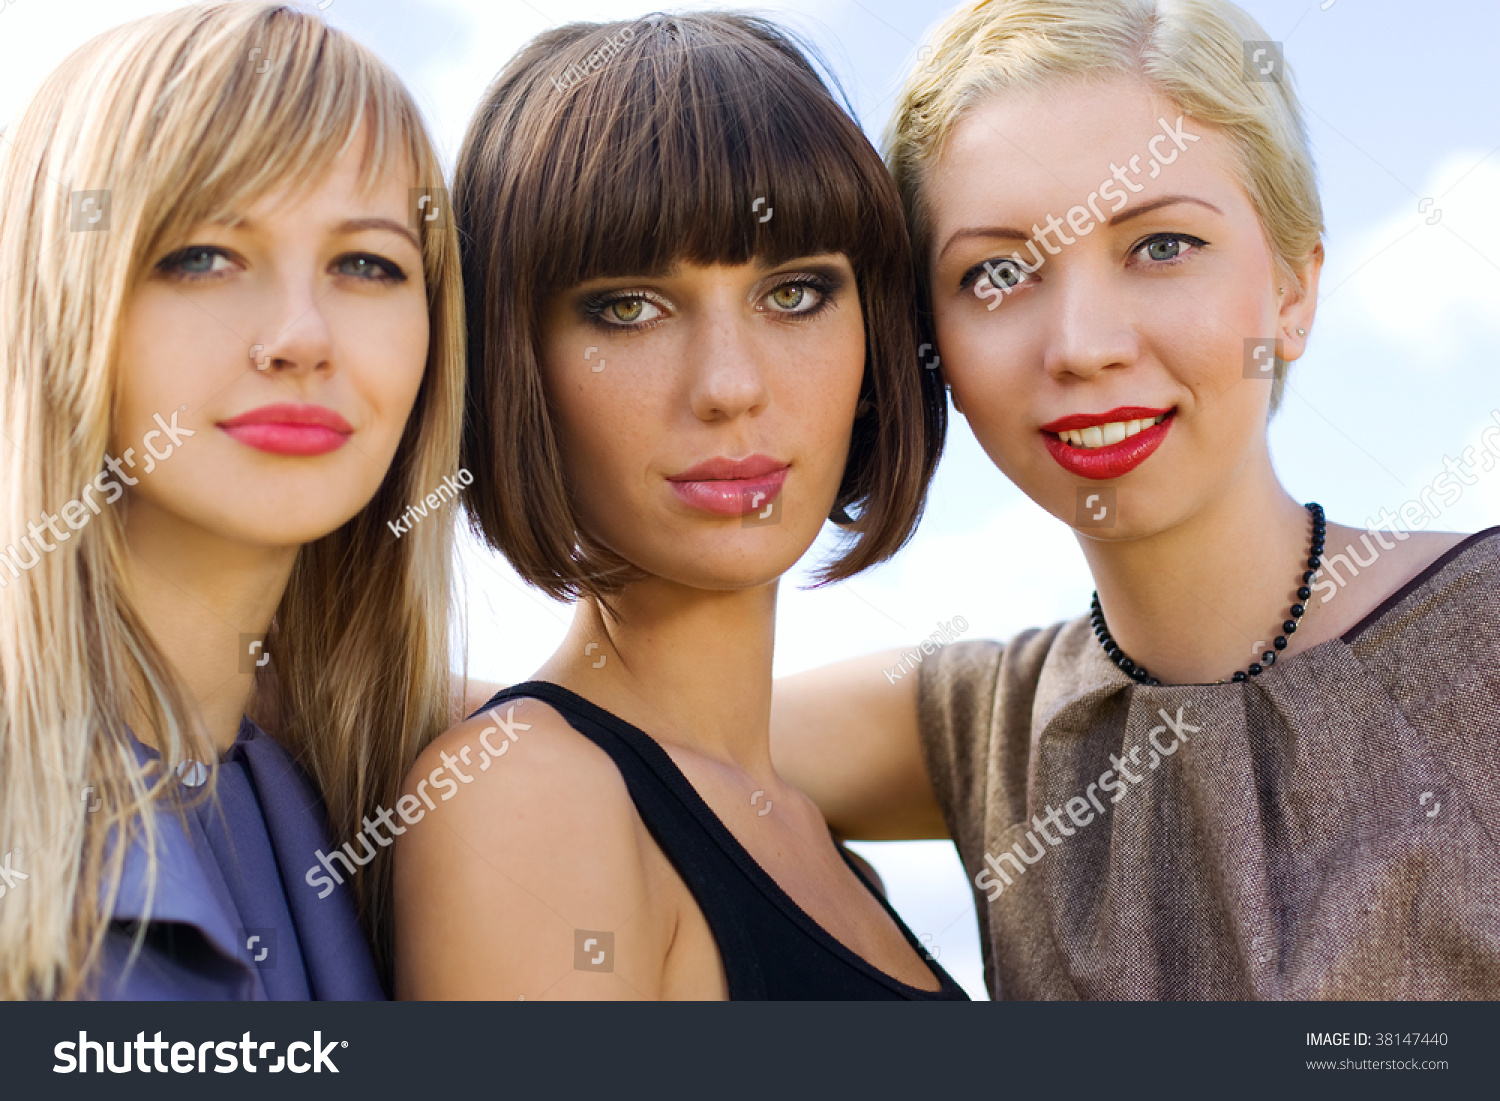 Beautiful Women, Girl Group Shot. Stock Photo 38147440 : Shutterstock